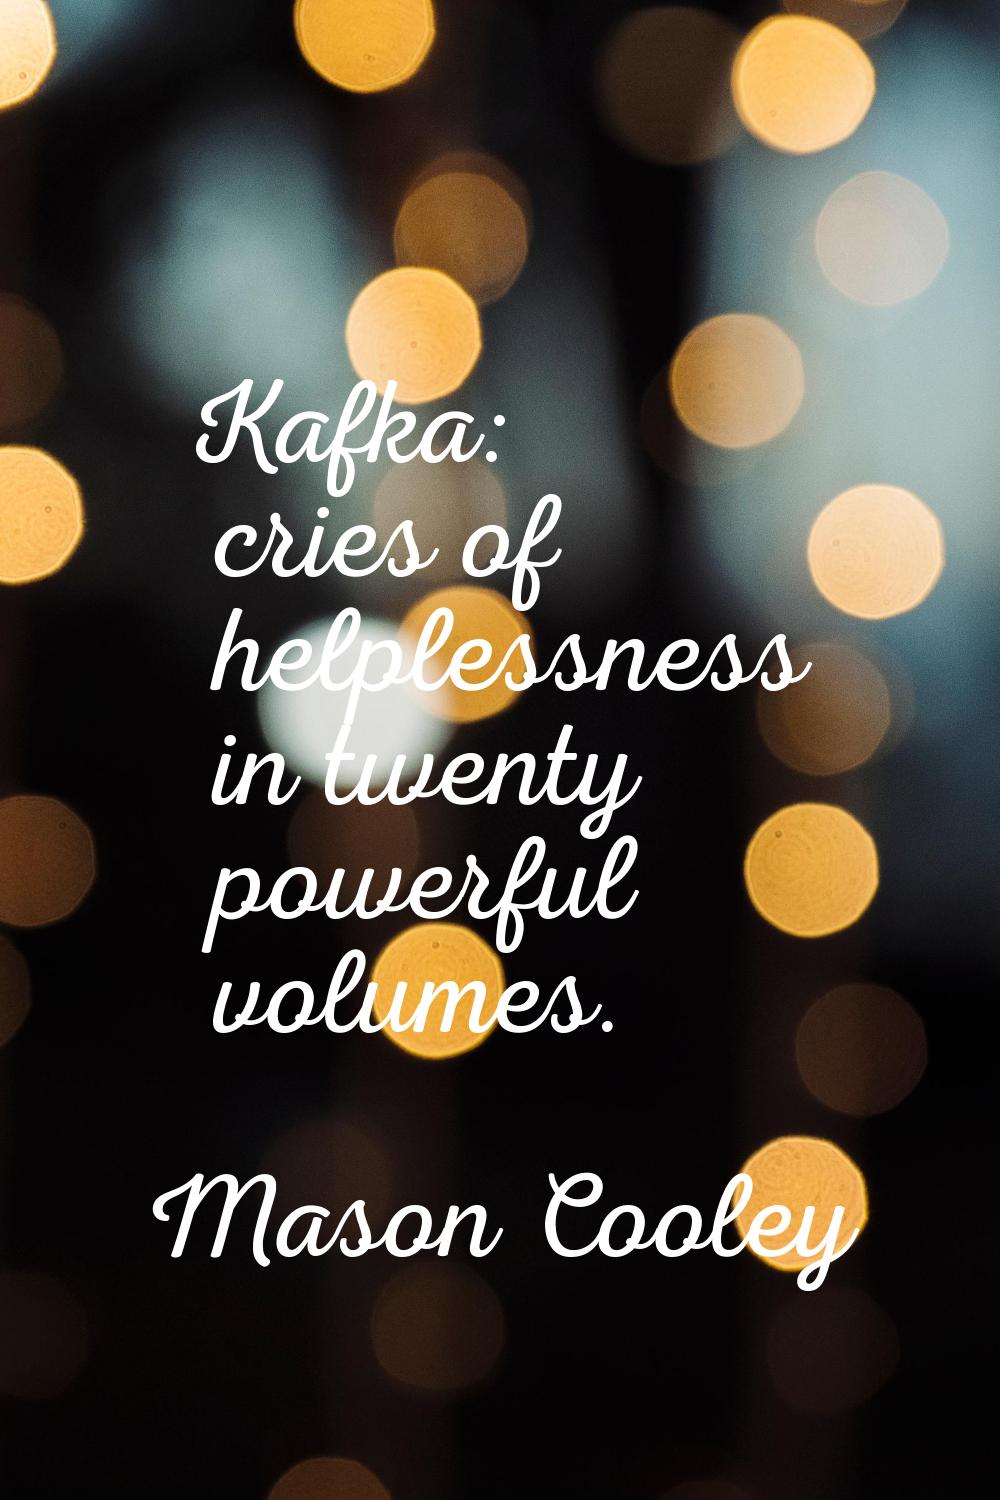 Kafka: cries of helplessness in twenty powerful volumes.